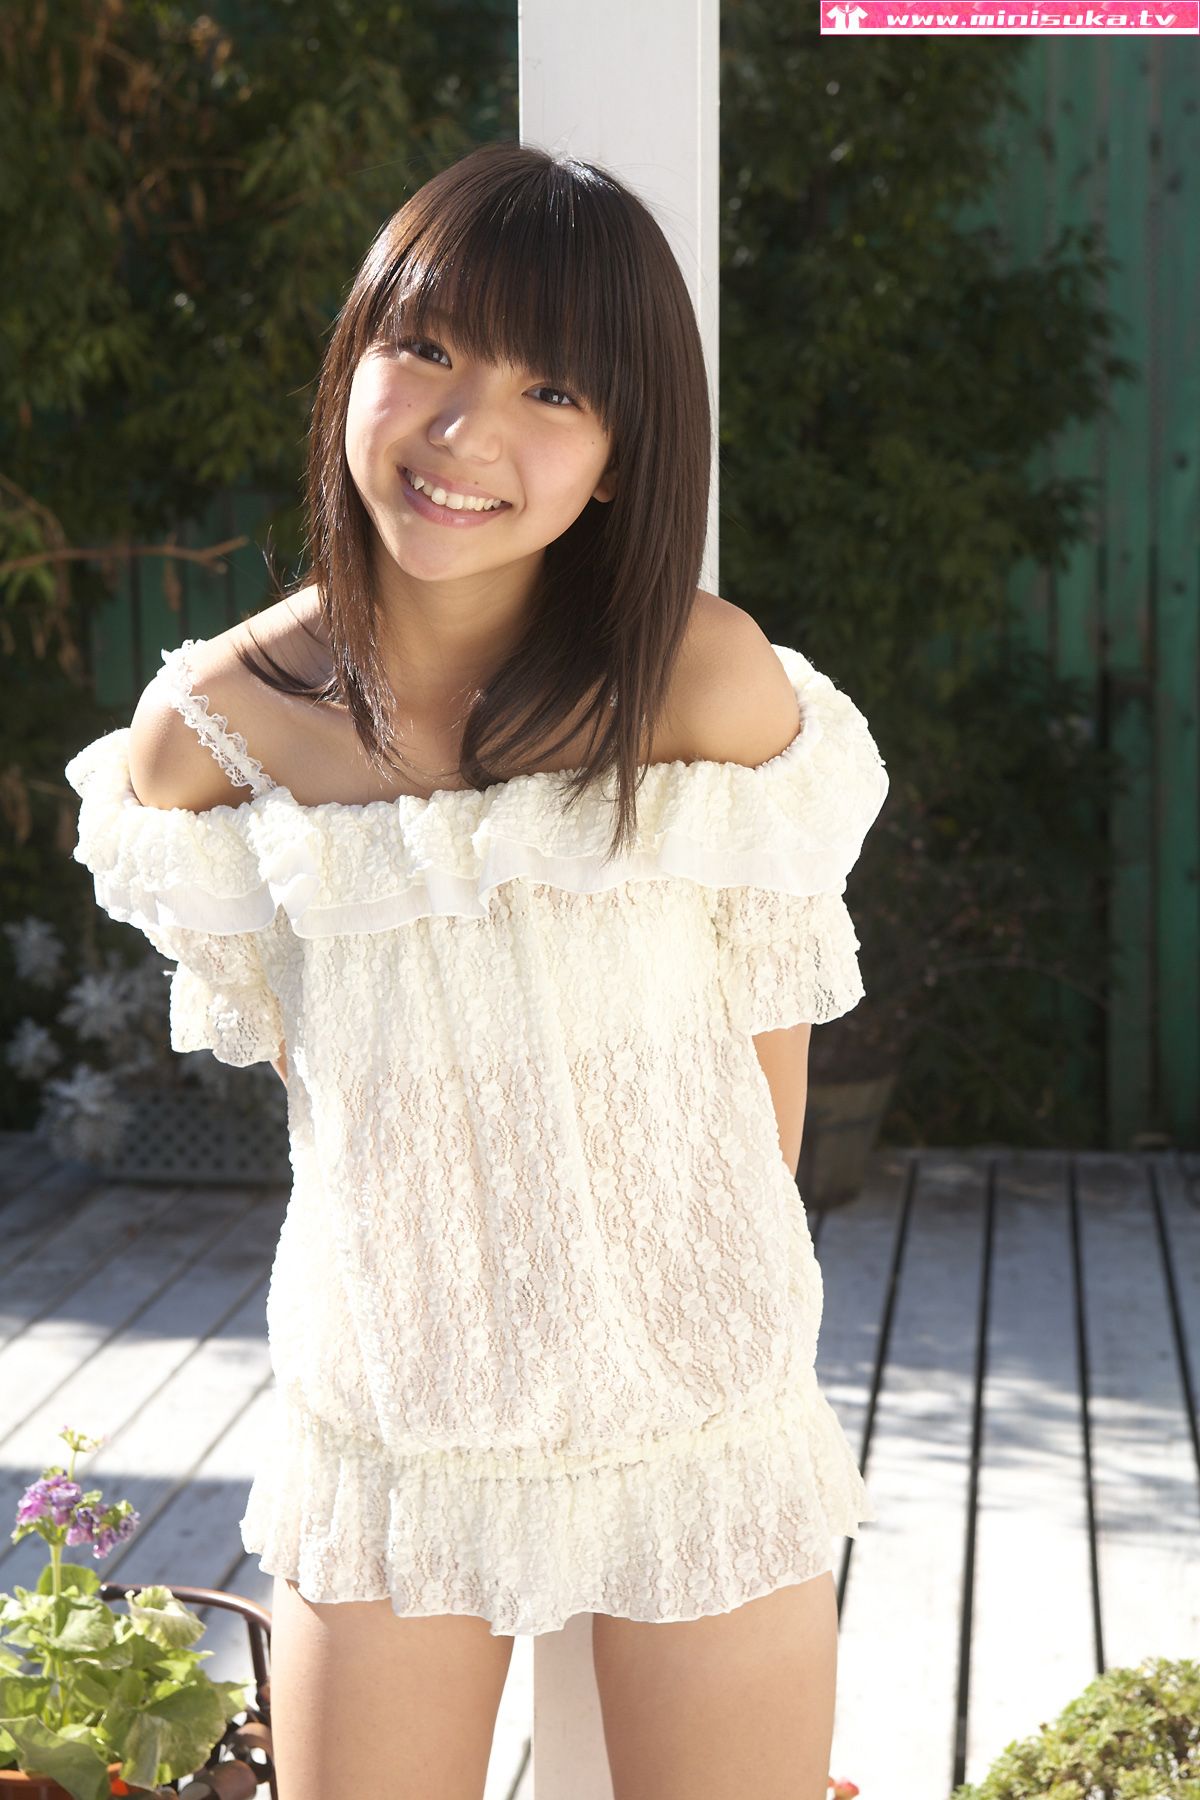 [Minisuka写真] 西浜ふうか Fuuka Nishihama 现役女子高生写真0